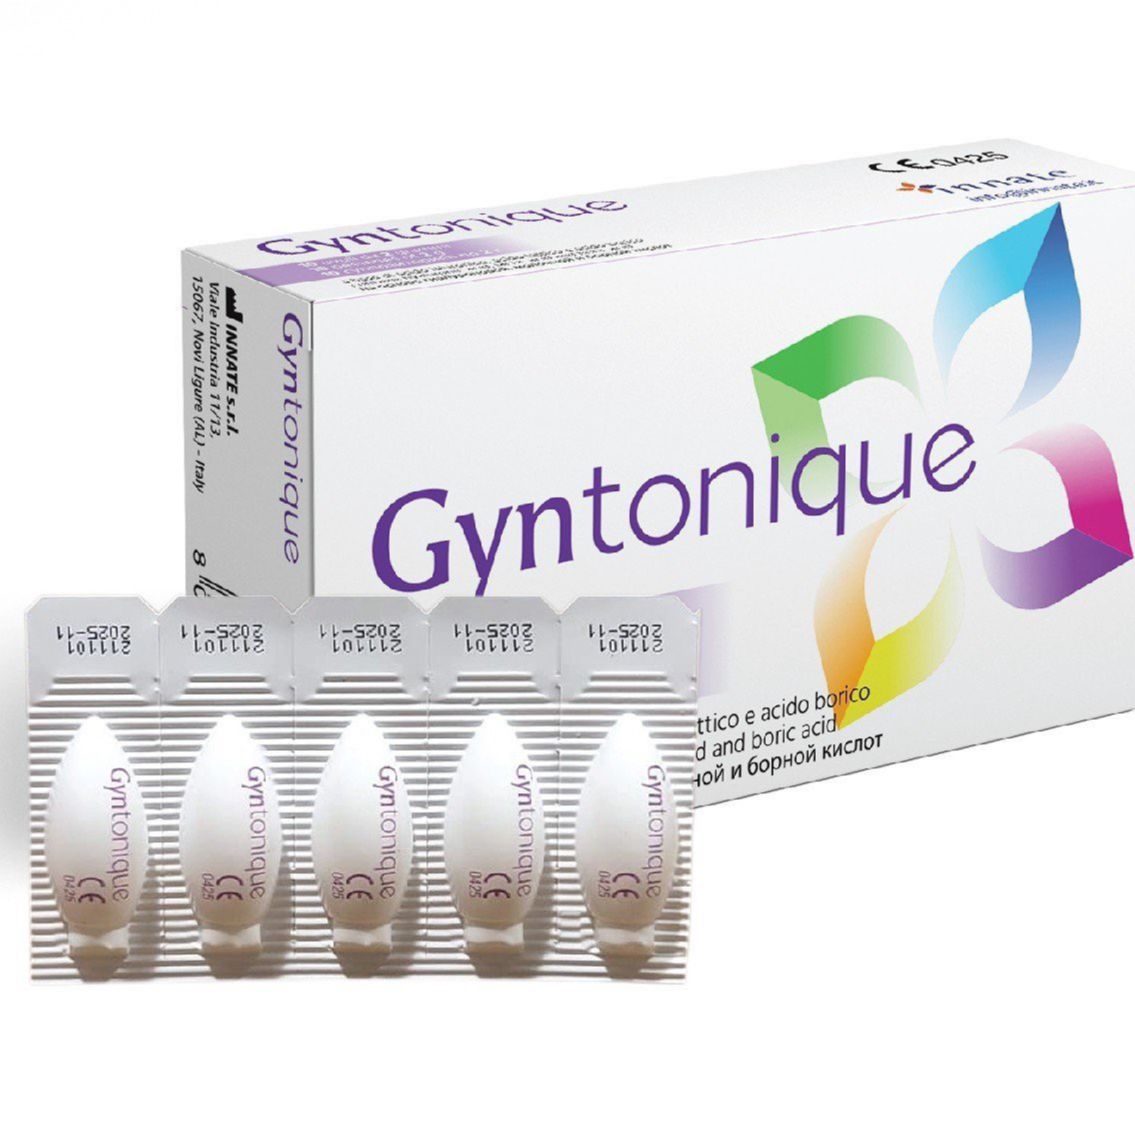 Gyntonique